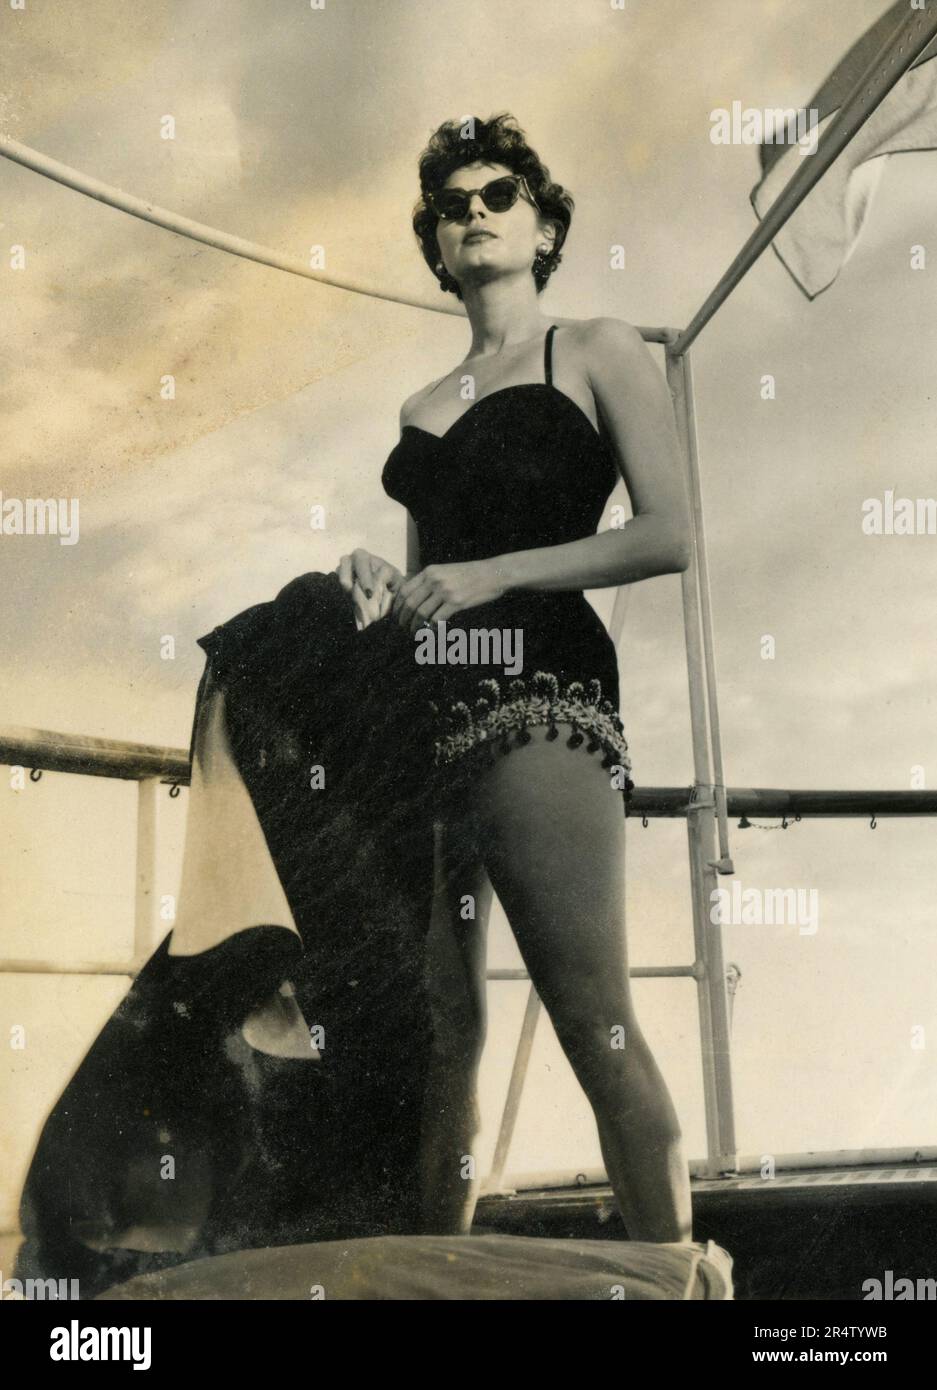 L'attrice americana Ava Gardner indossa un costume da bagno nero, USA 1950s  Foto stock - Alamy